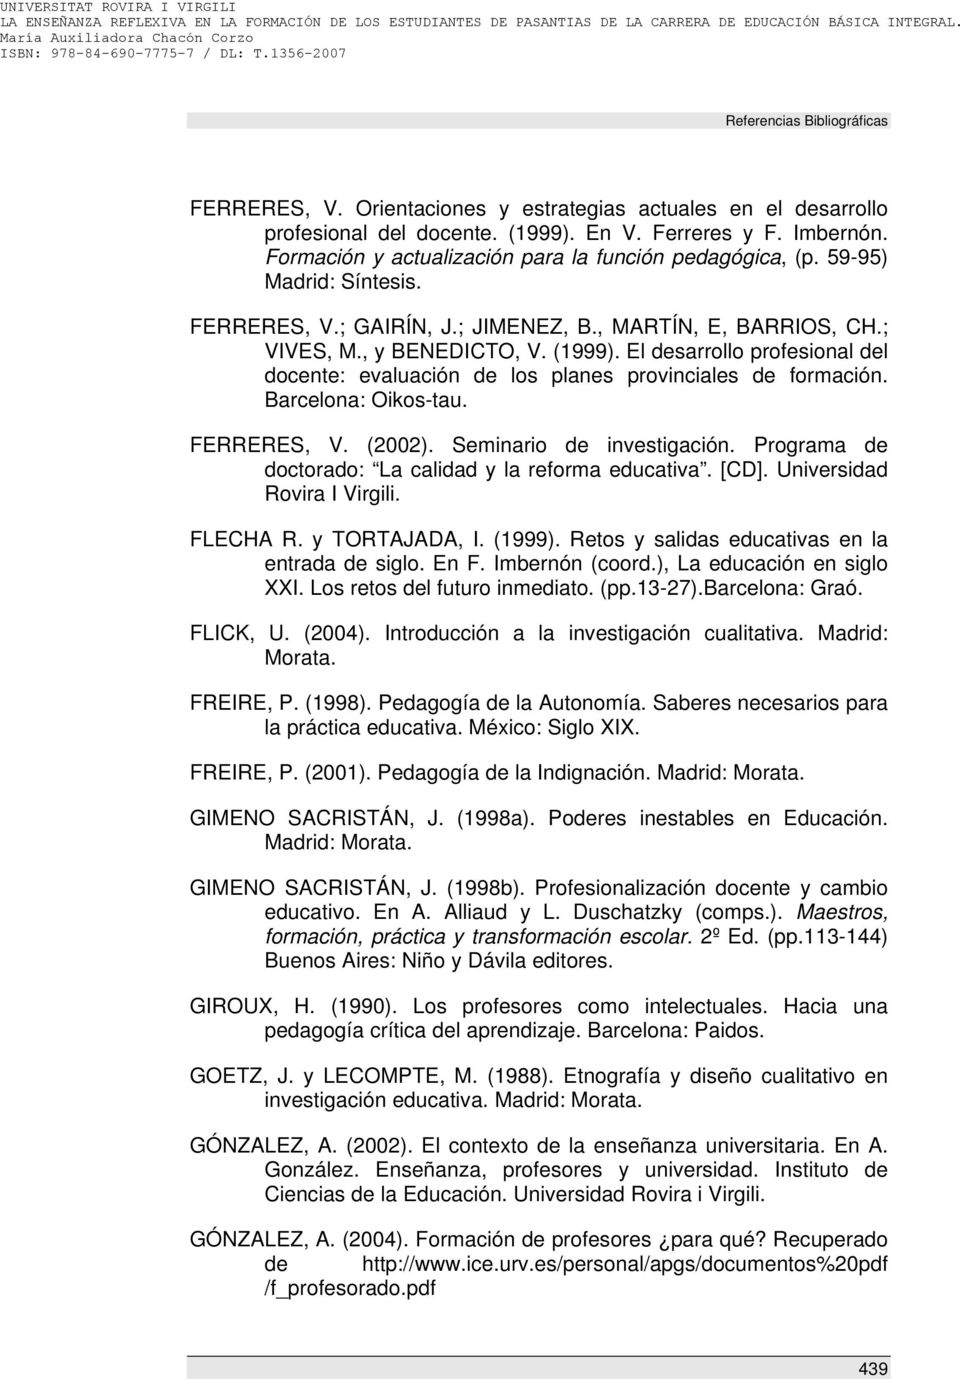 El desarrollo profesional del docente: evaluación de los planes provinciales de formación. Barcelona: Oikos-tau. FERRERES, V. (2002). Seminario de investigación.